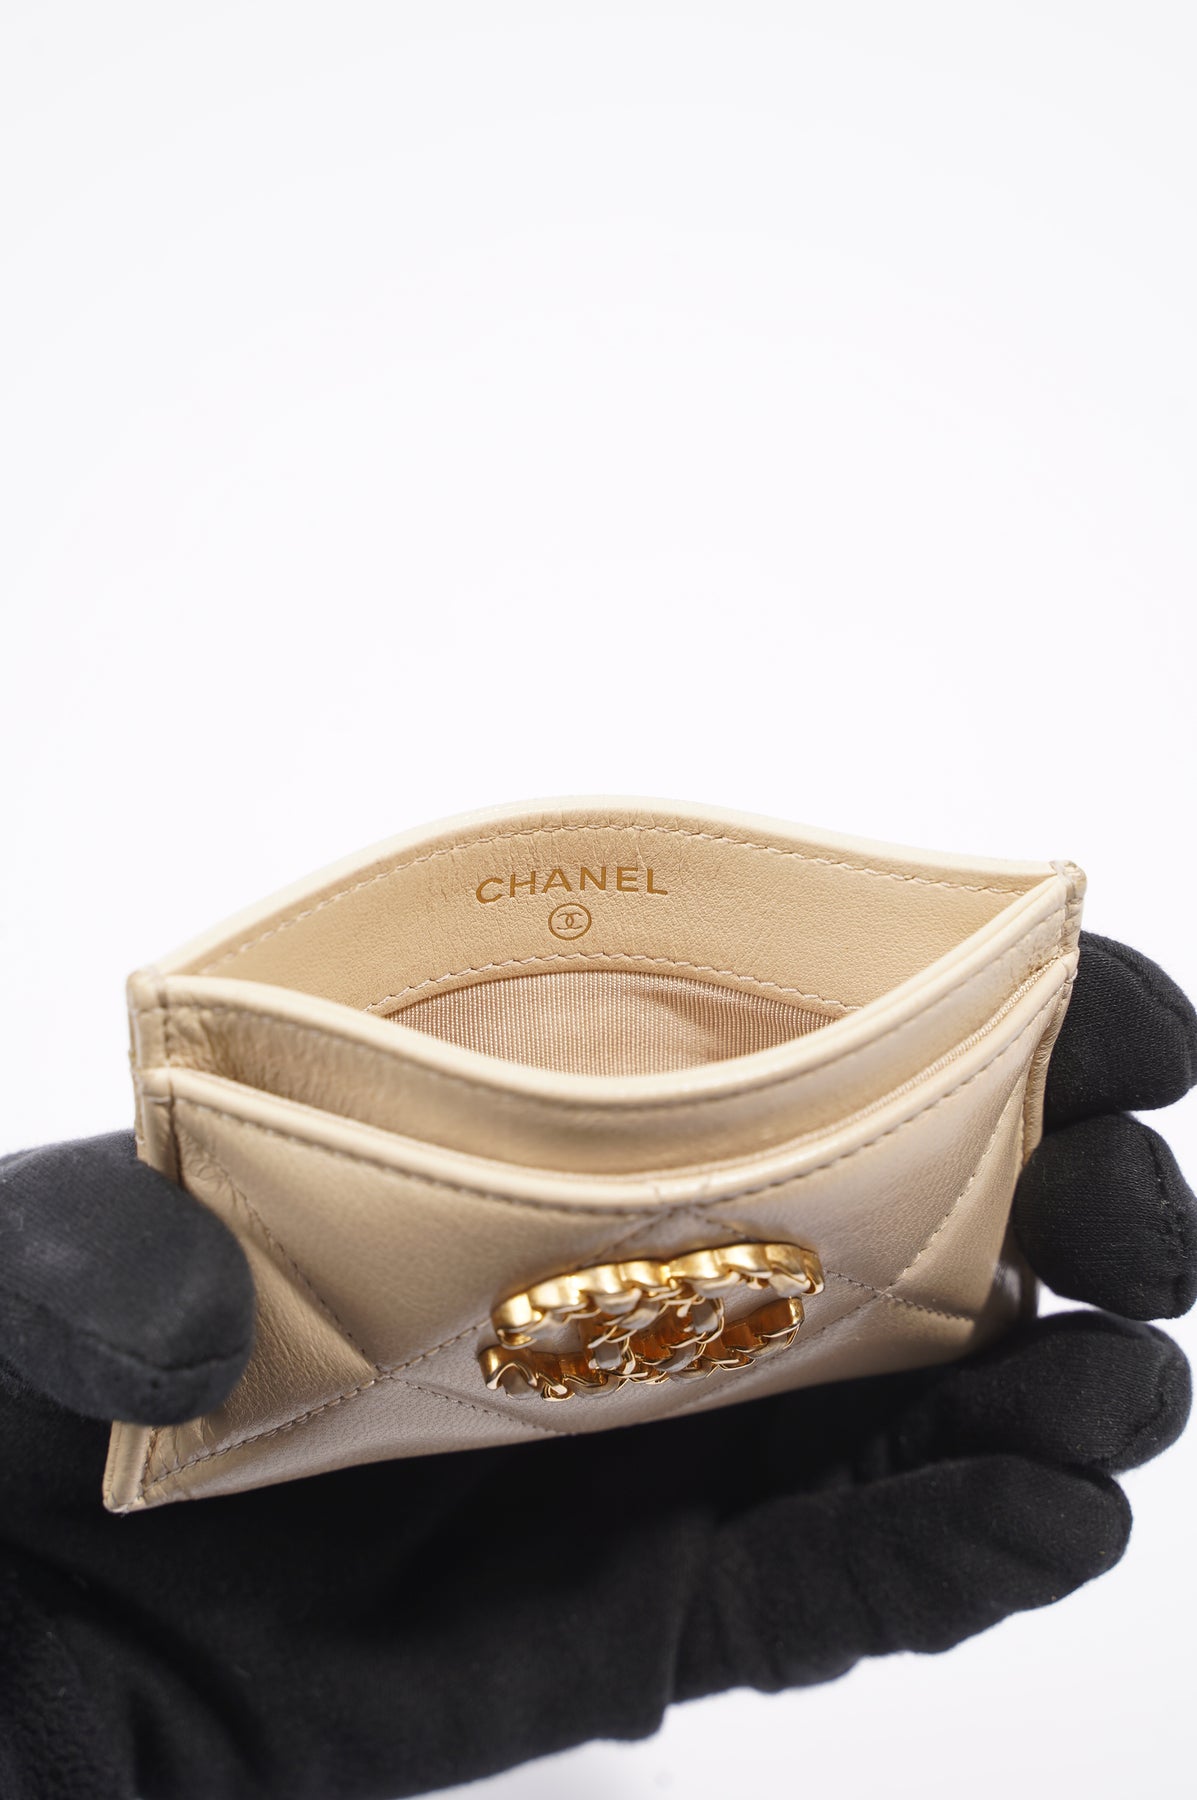 Chanel 19 Card Holder Black